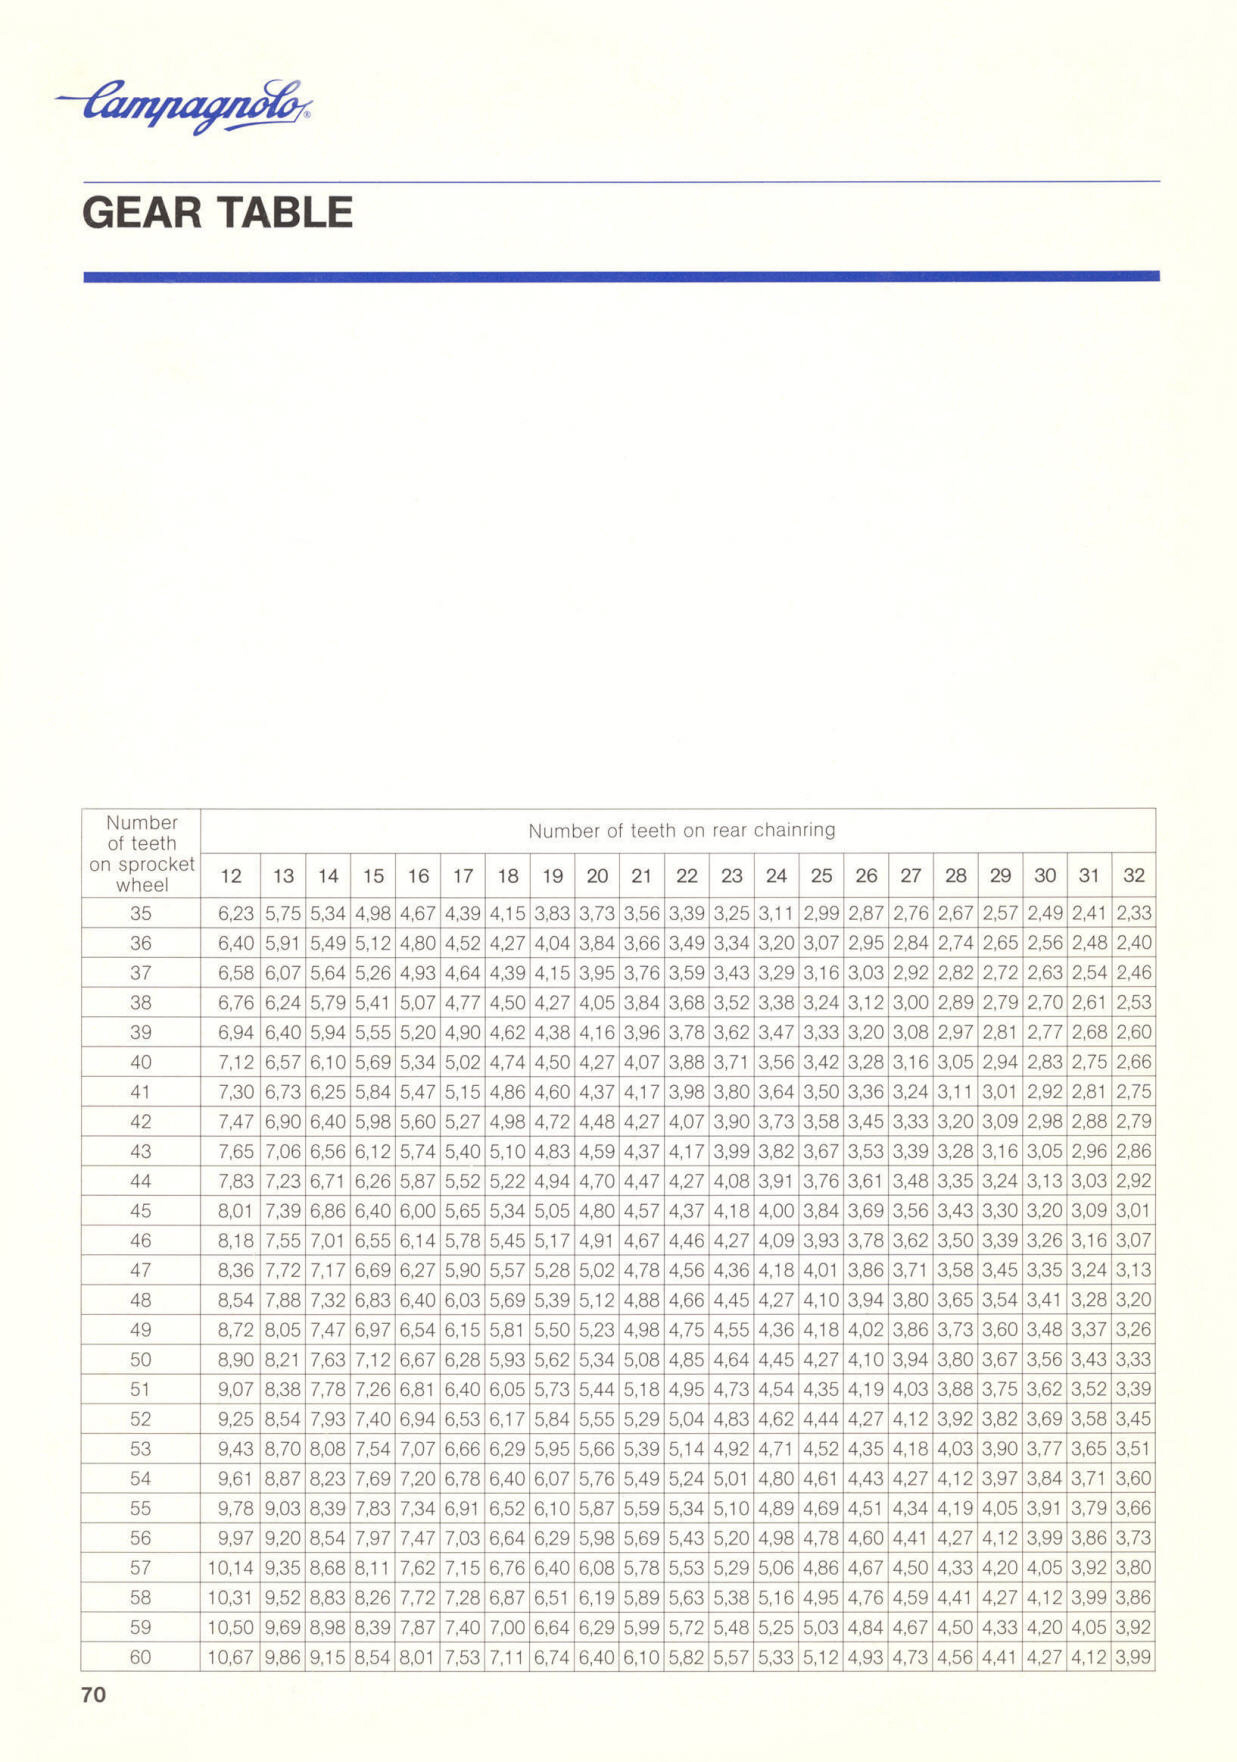 Campagnolo catalog # 18 (12-1985)